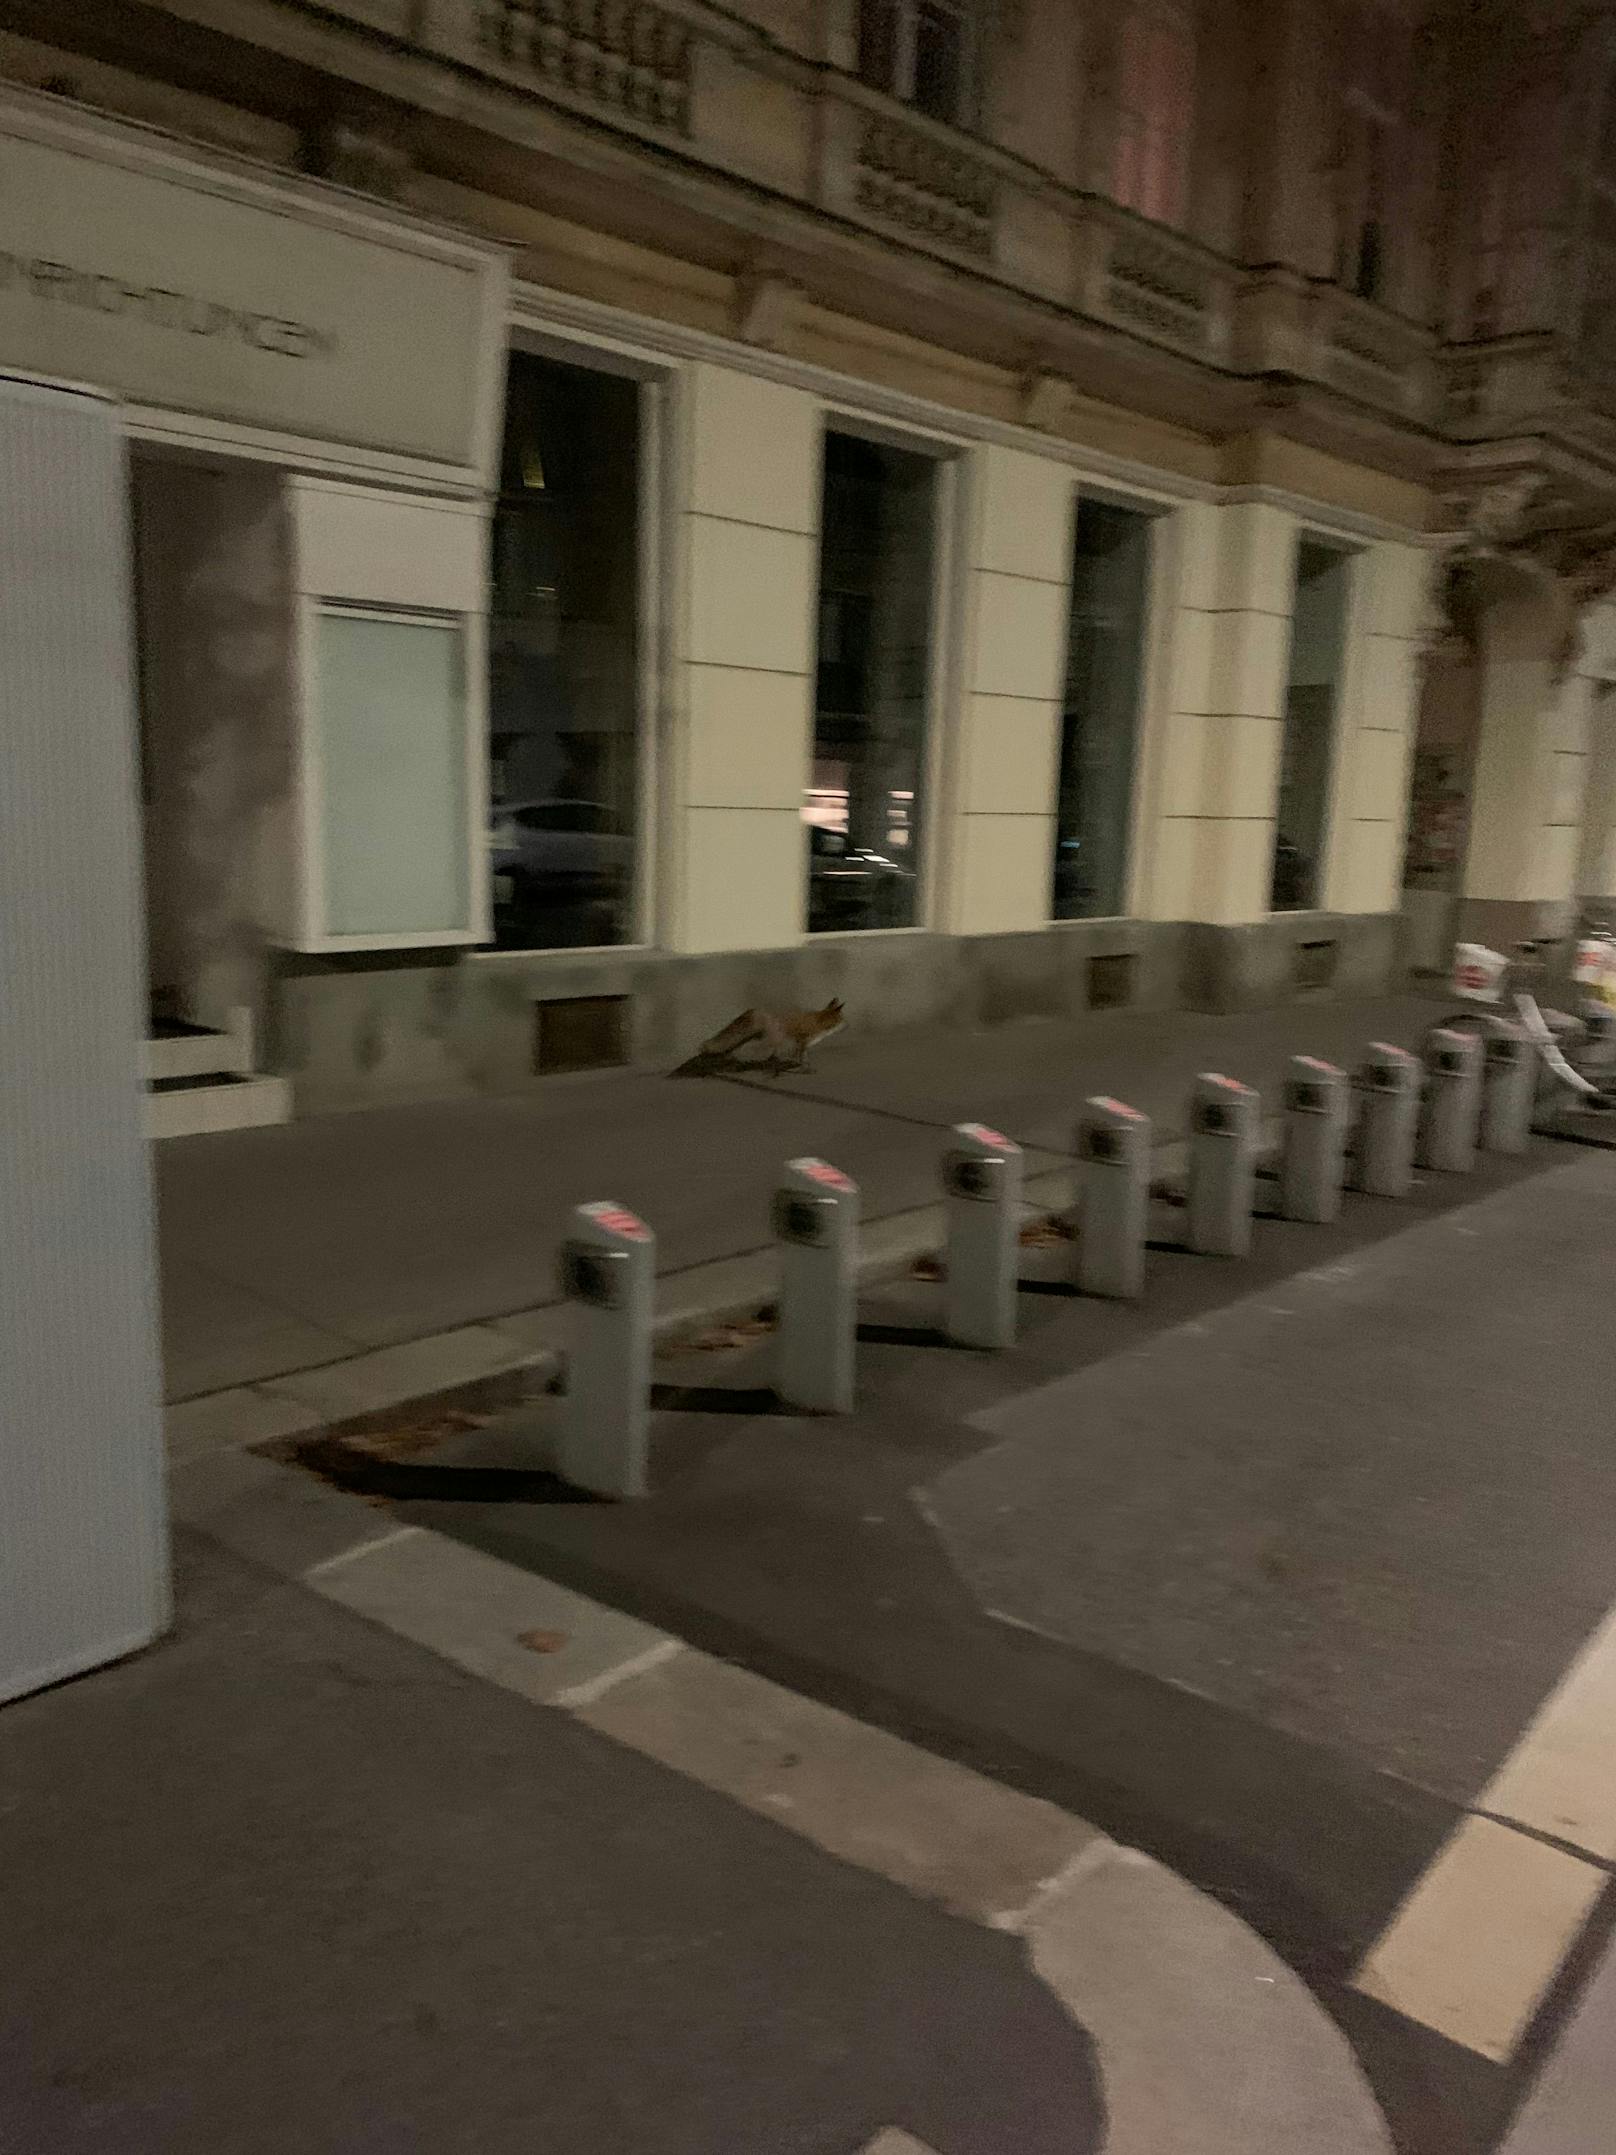 Das Tier trieb in der Wiener Innenstadt sein Unwesen.